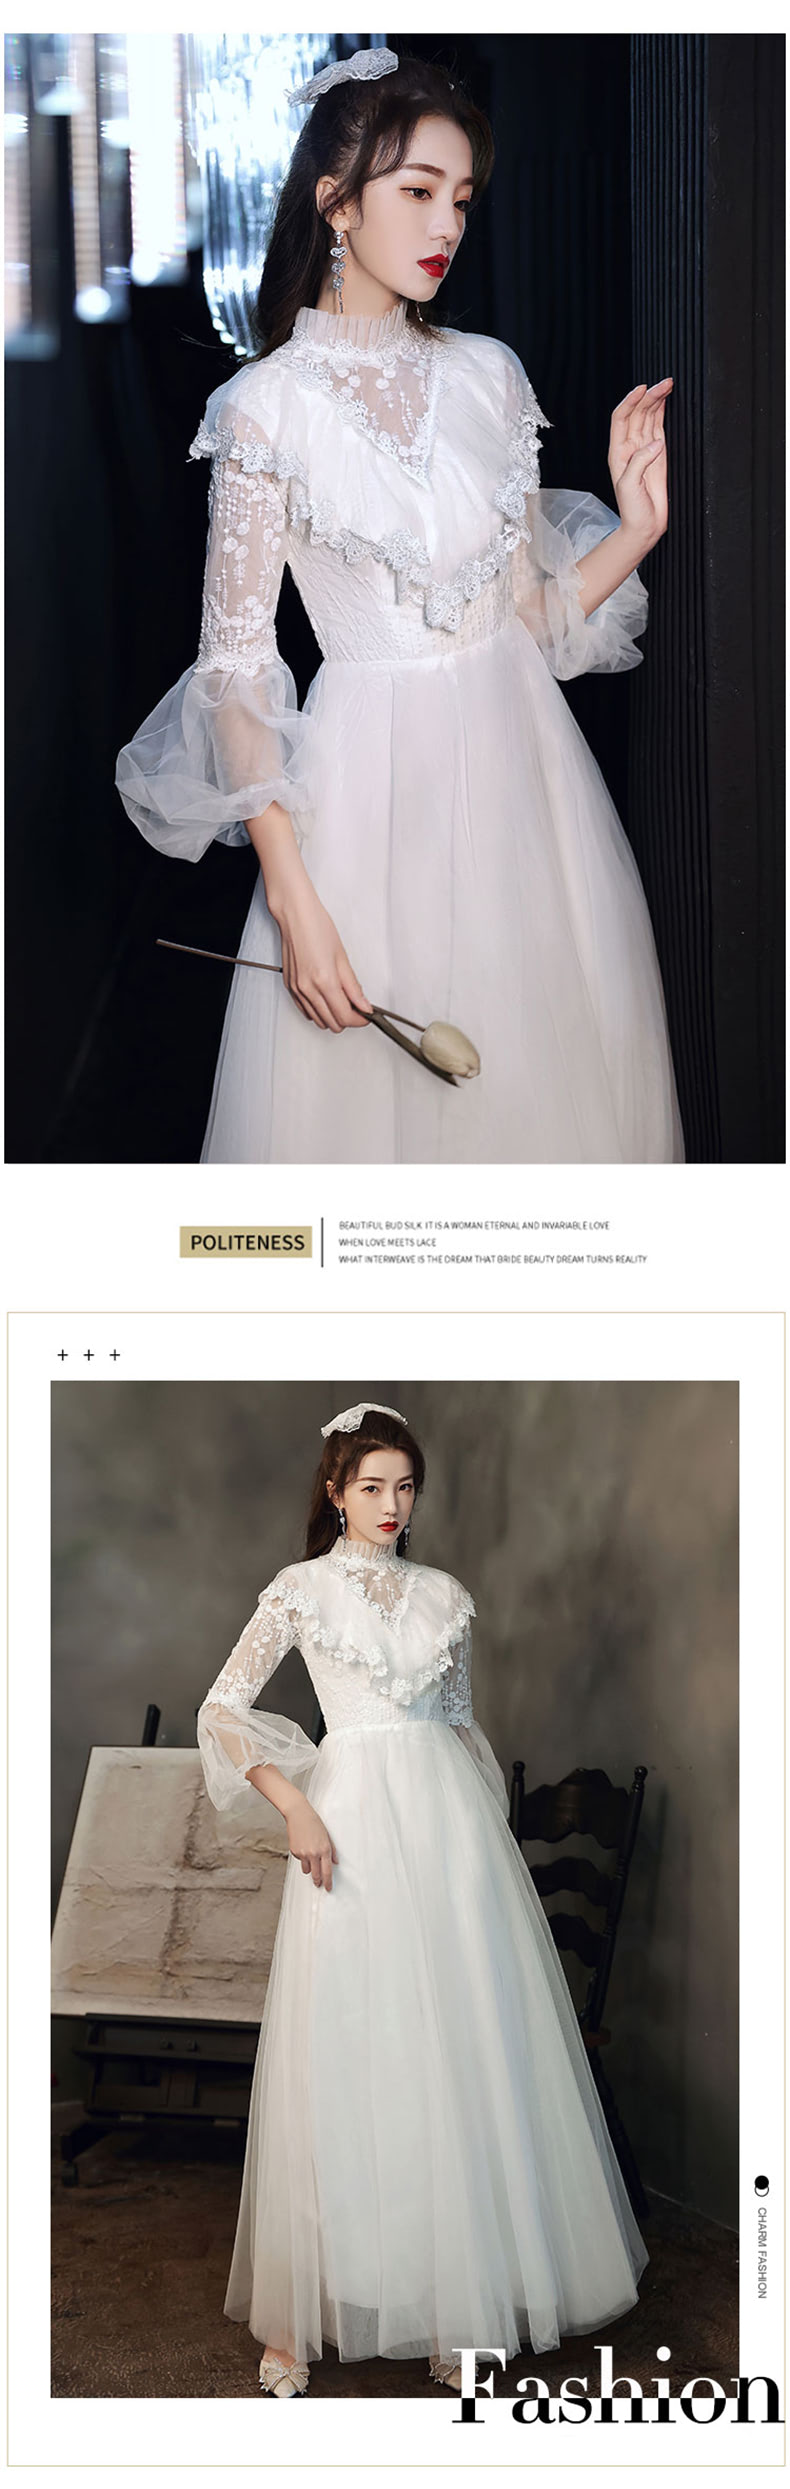 Elegant-Long-Sleeve-White-Maxi-Dress-Prom-Dance-Ball-Gown11.jpg